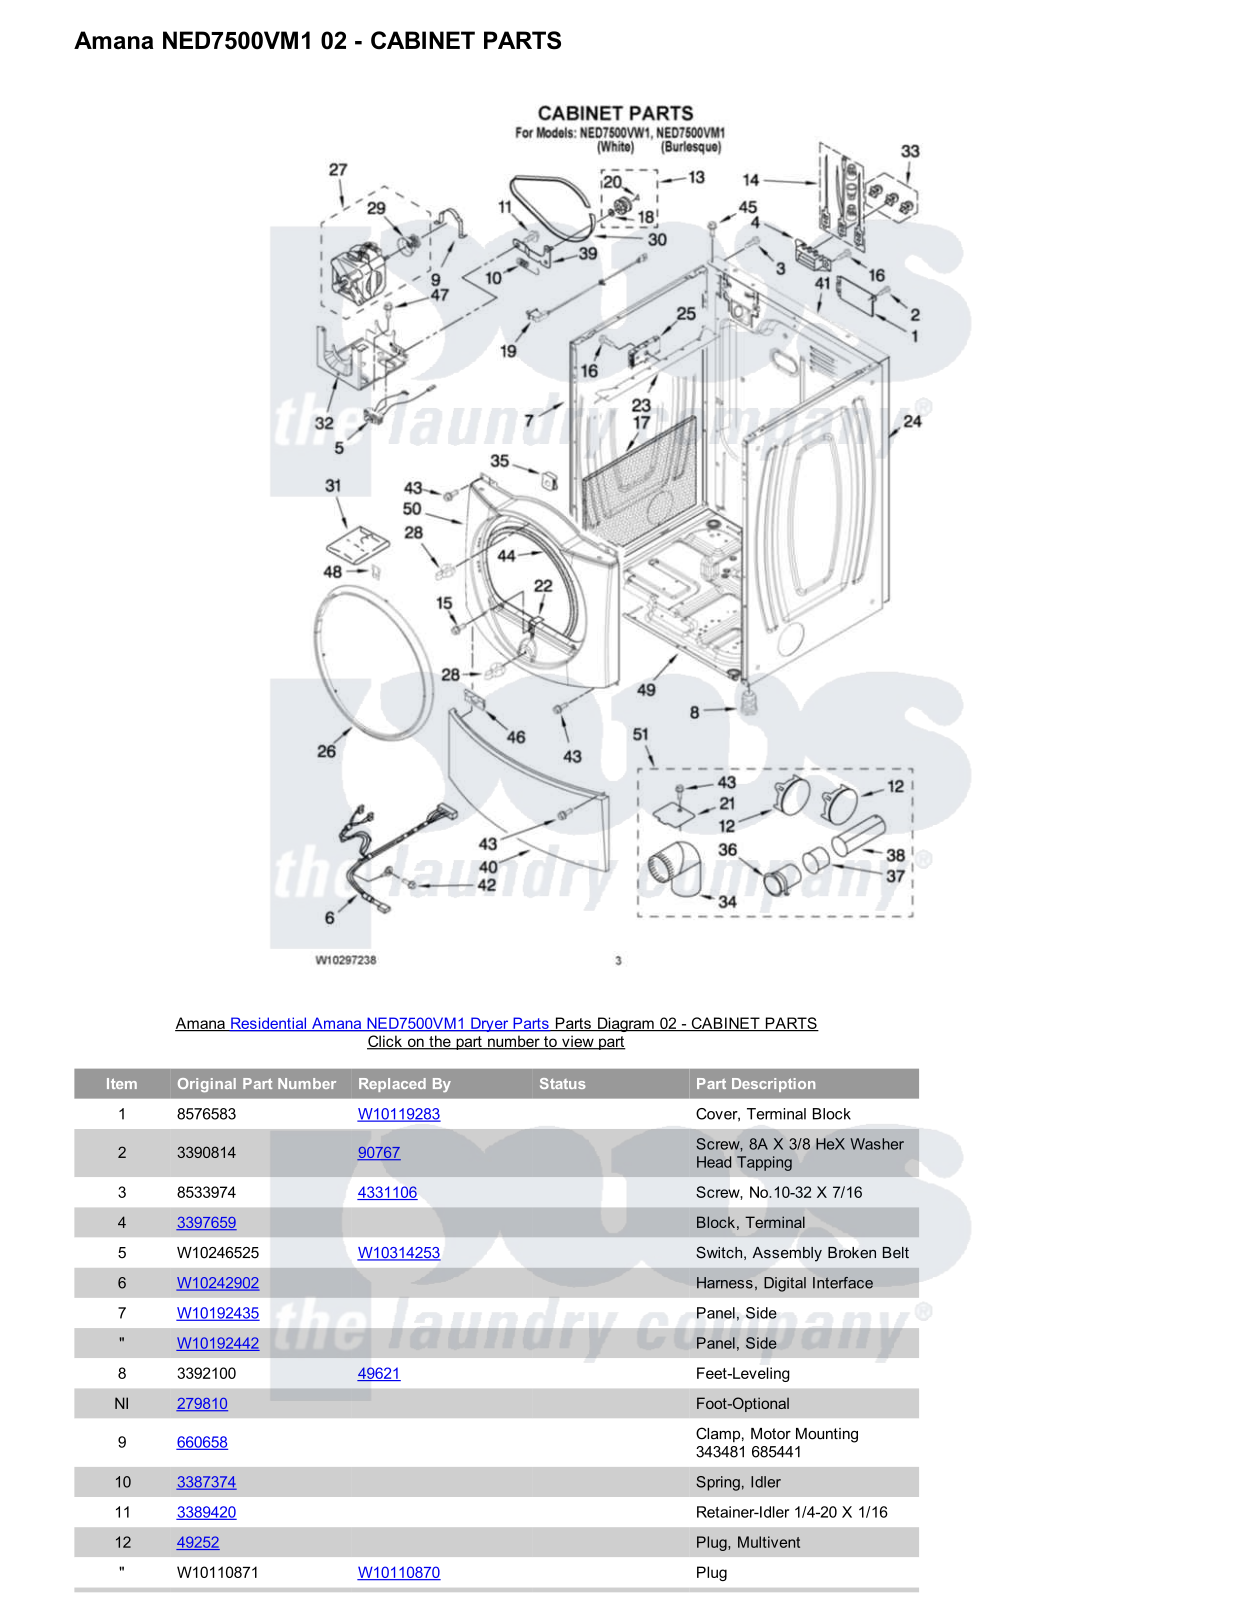 Amana NED7500VM1 Parts Diagram